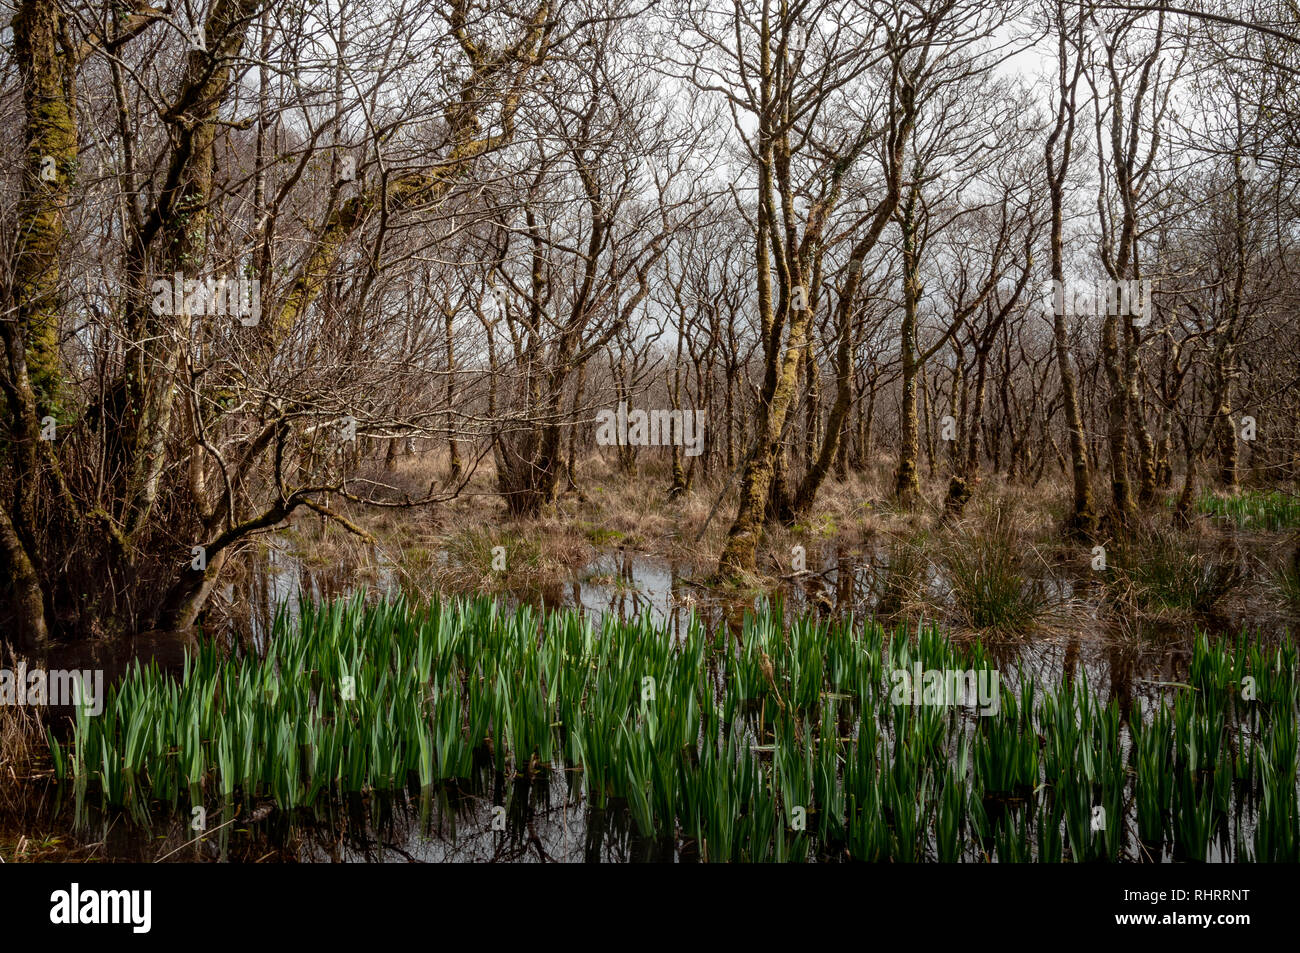 Herbe de Cogon ou Imperata cylindrica et arbres de mousses dans un marais terres marécageuses marécages forêt boisée dans le parc national de Killarney, comté de Kerry, Irlande. Banque D'Images